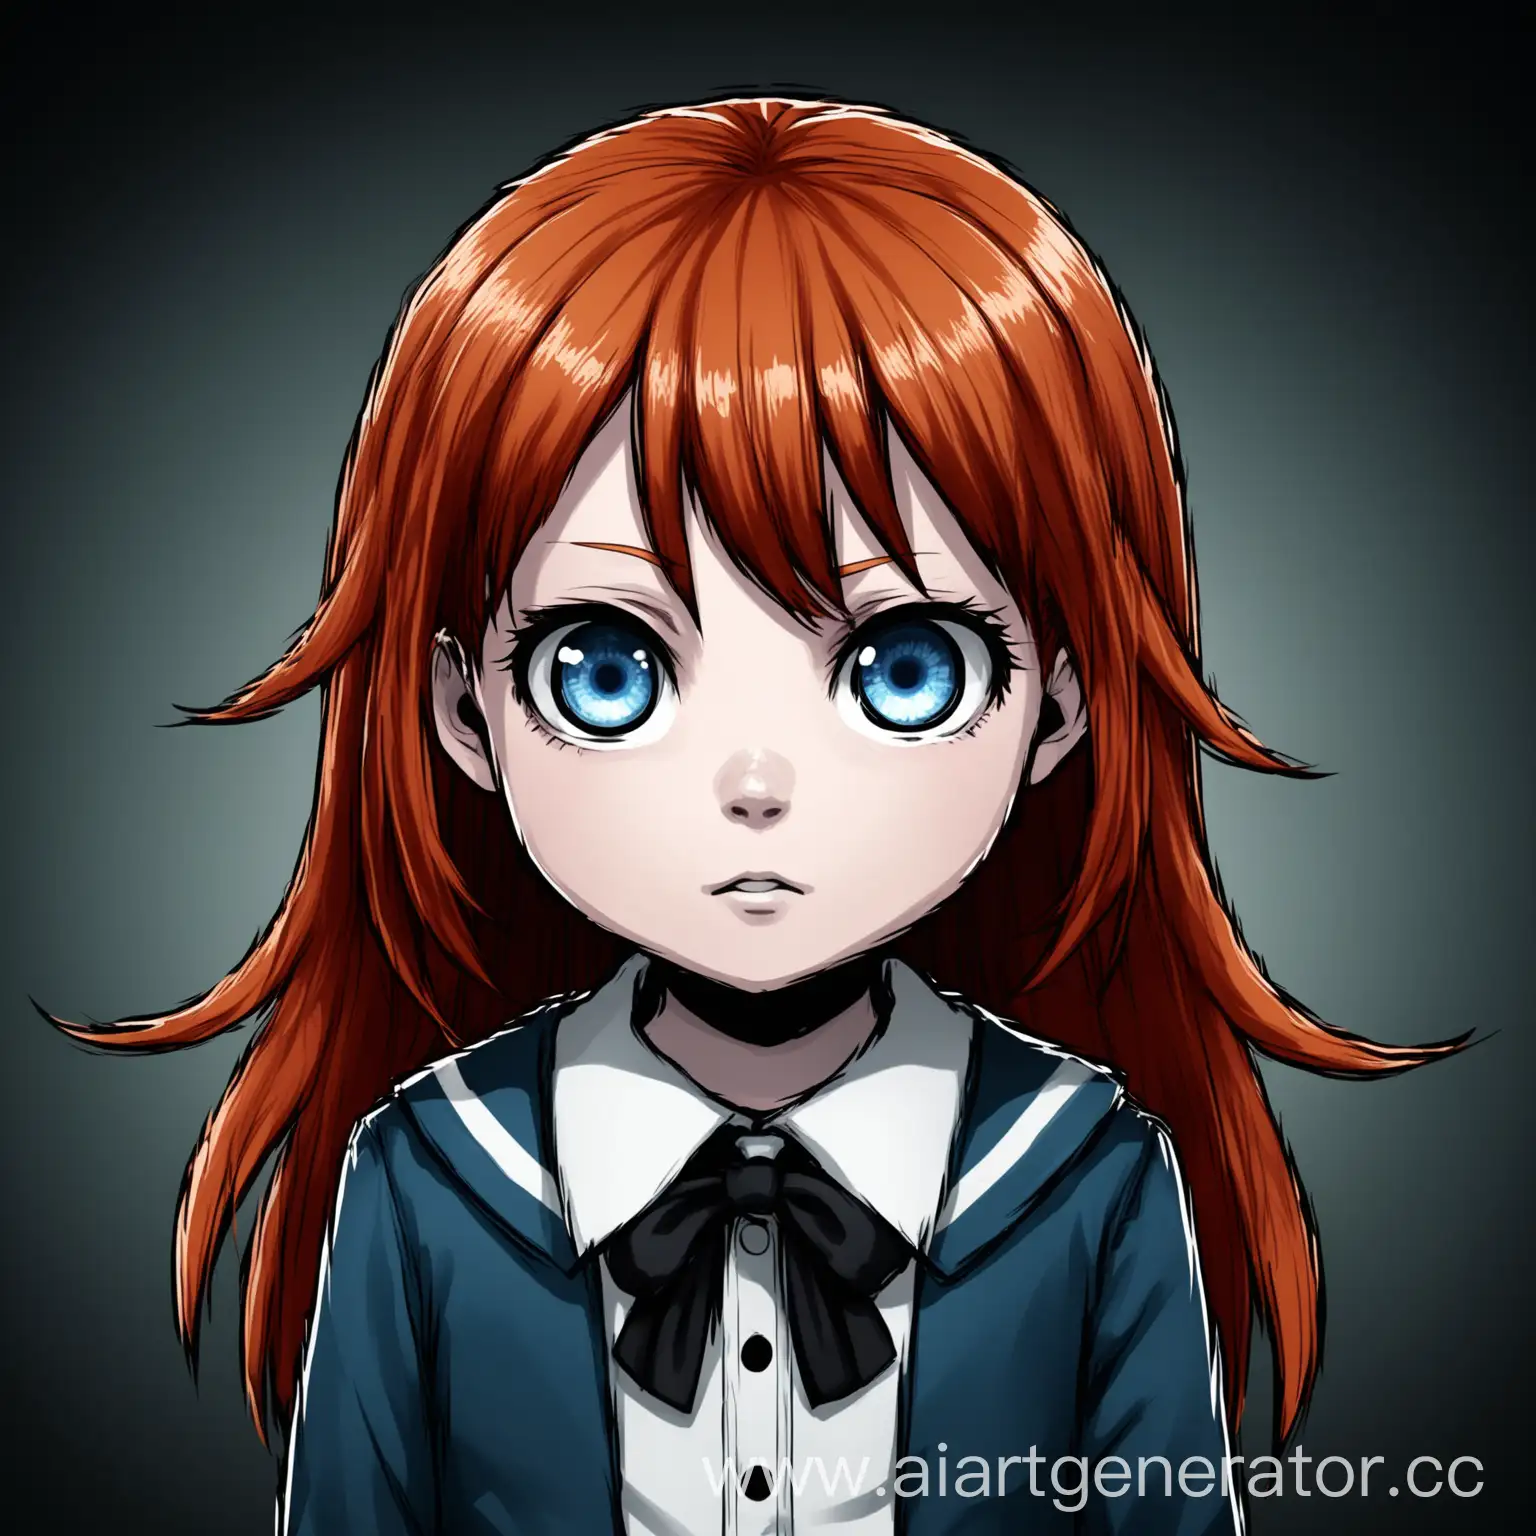 6 летния девочка, рыжыми волосами, синими глаза в стиле Danganronpa 